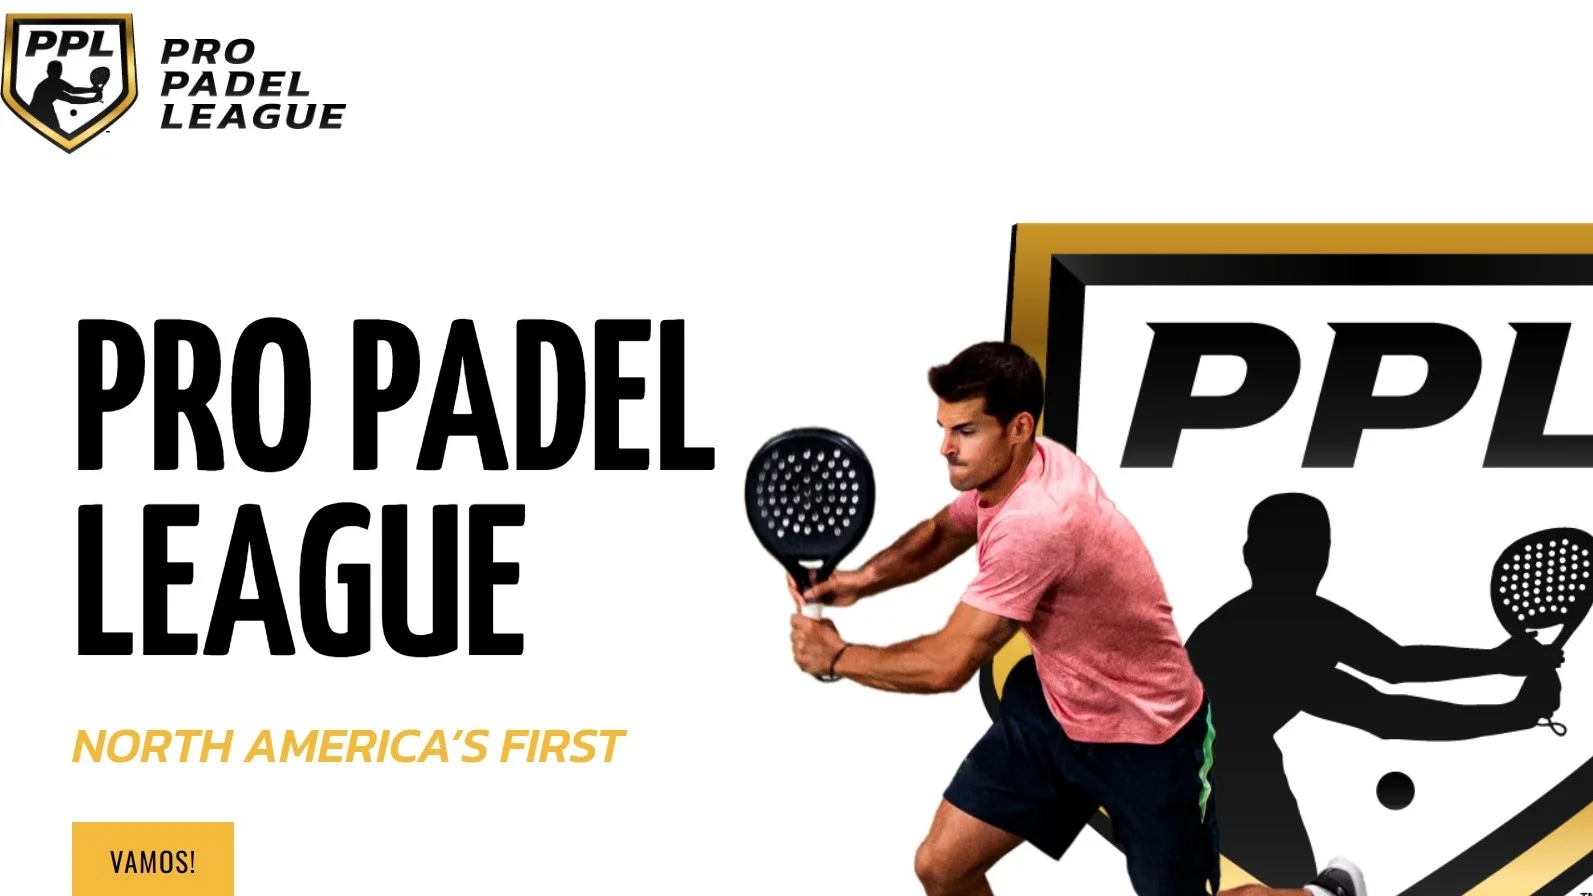 Pro Padel league